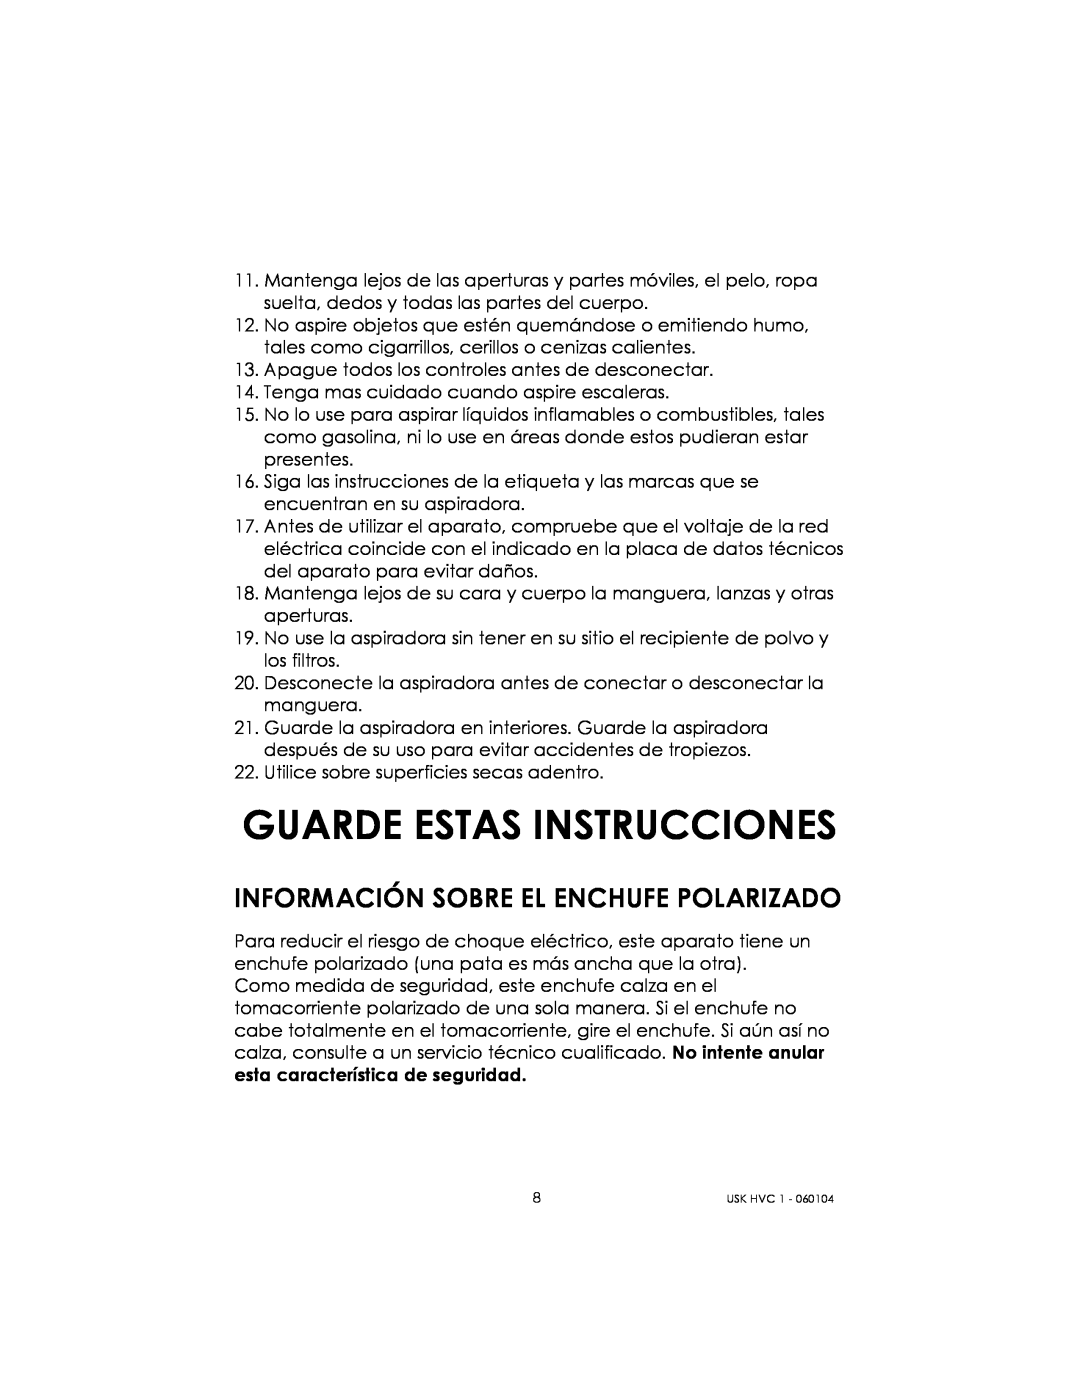 Kalorik USK HVC 1 - 060104 manual Guarde Estas Instrucciones, Información Sobre El Enchufe Polarizado 